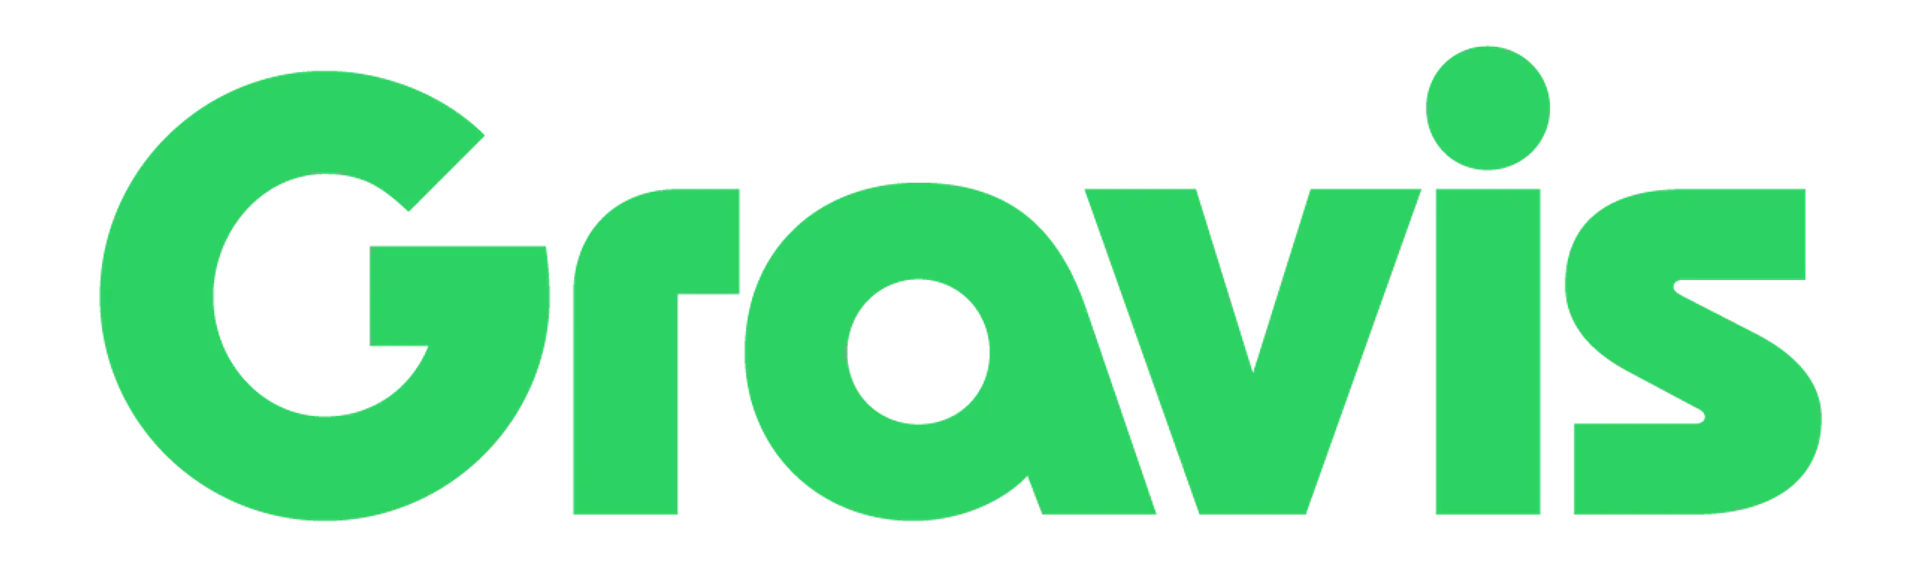 GRAVIS logo die aktuell Flugblatt